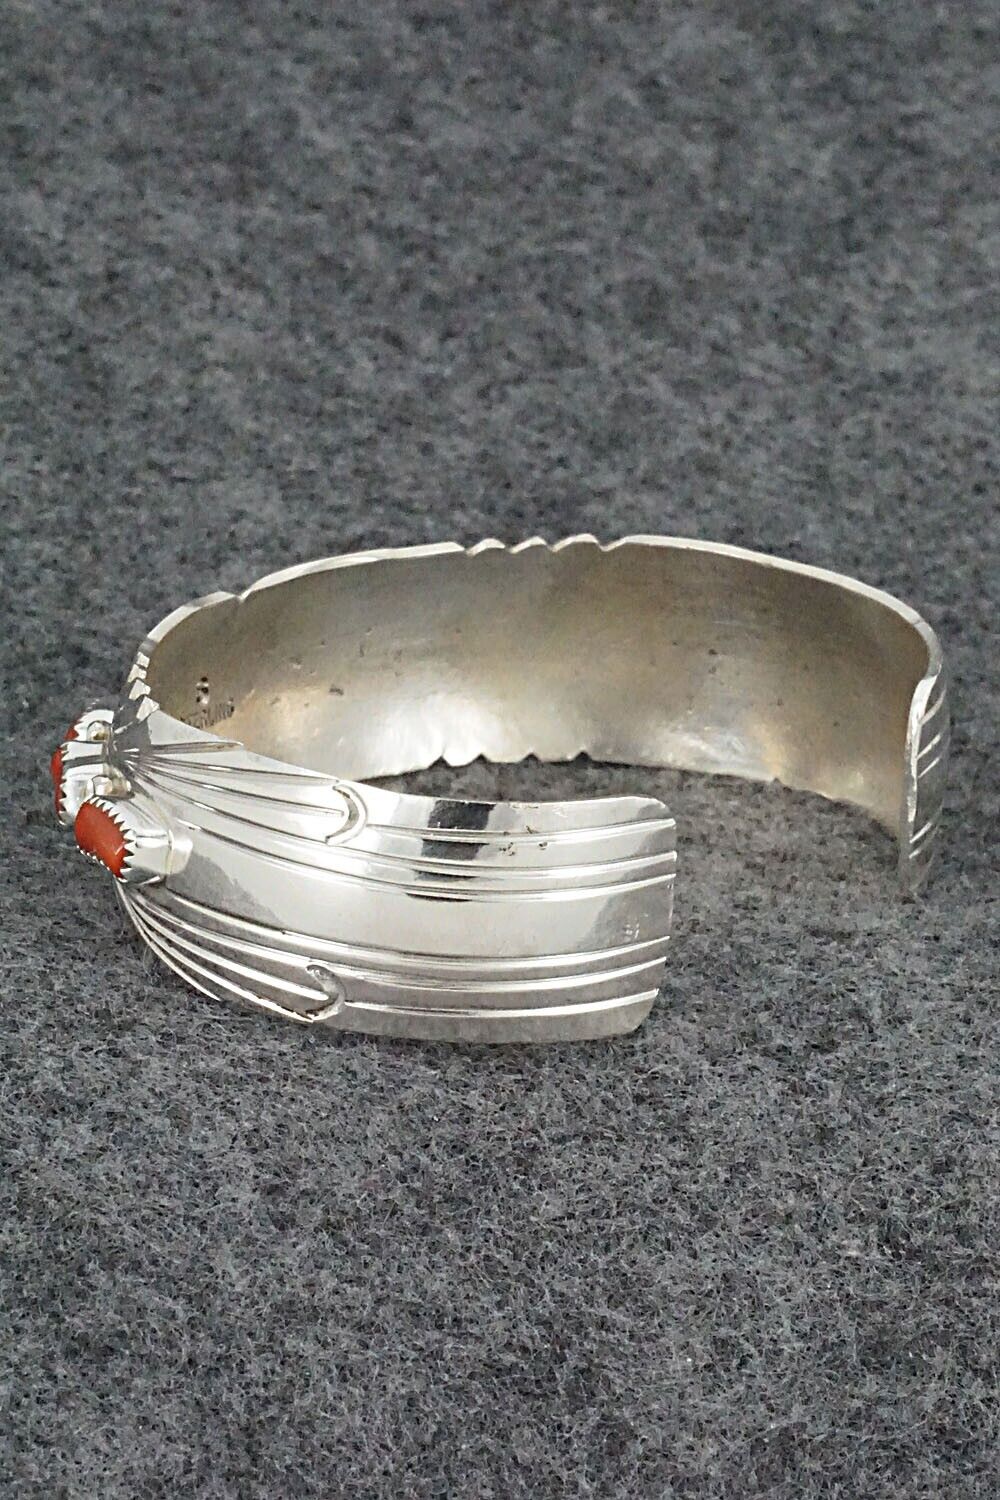 Coral & Sterling Silver Bracelet - David Segar